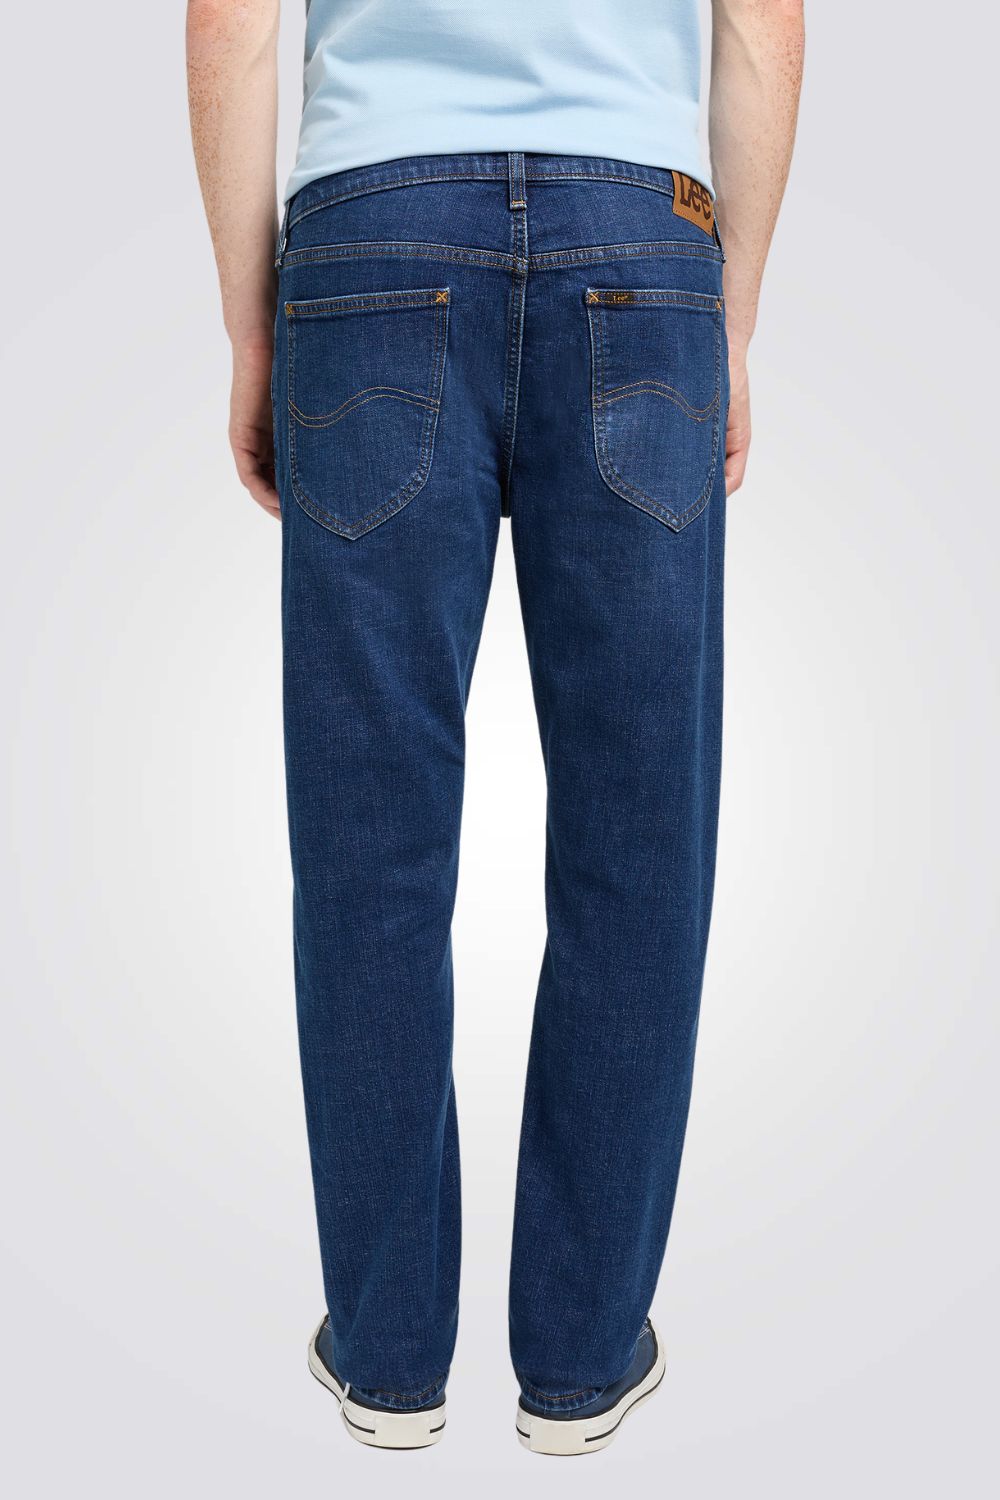 ג'ינס SPRINGFIELDB בצבע כחול כהה